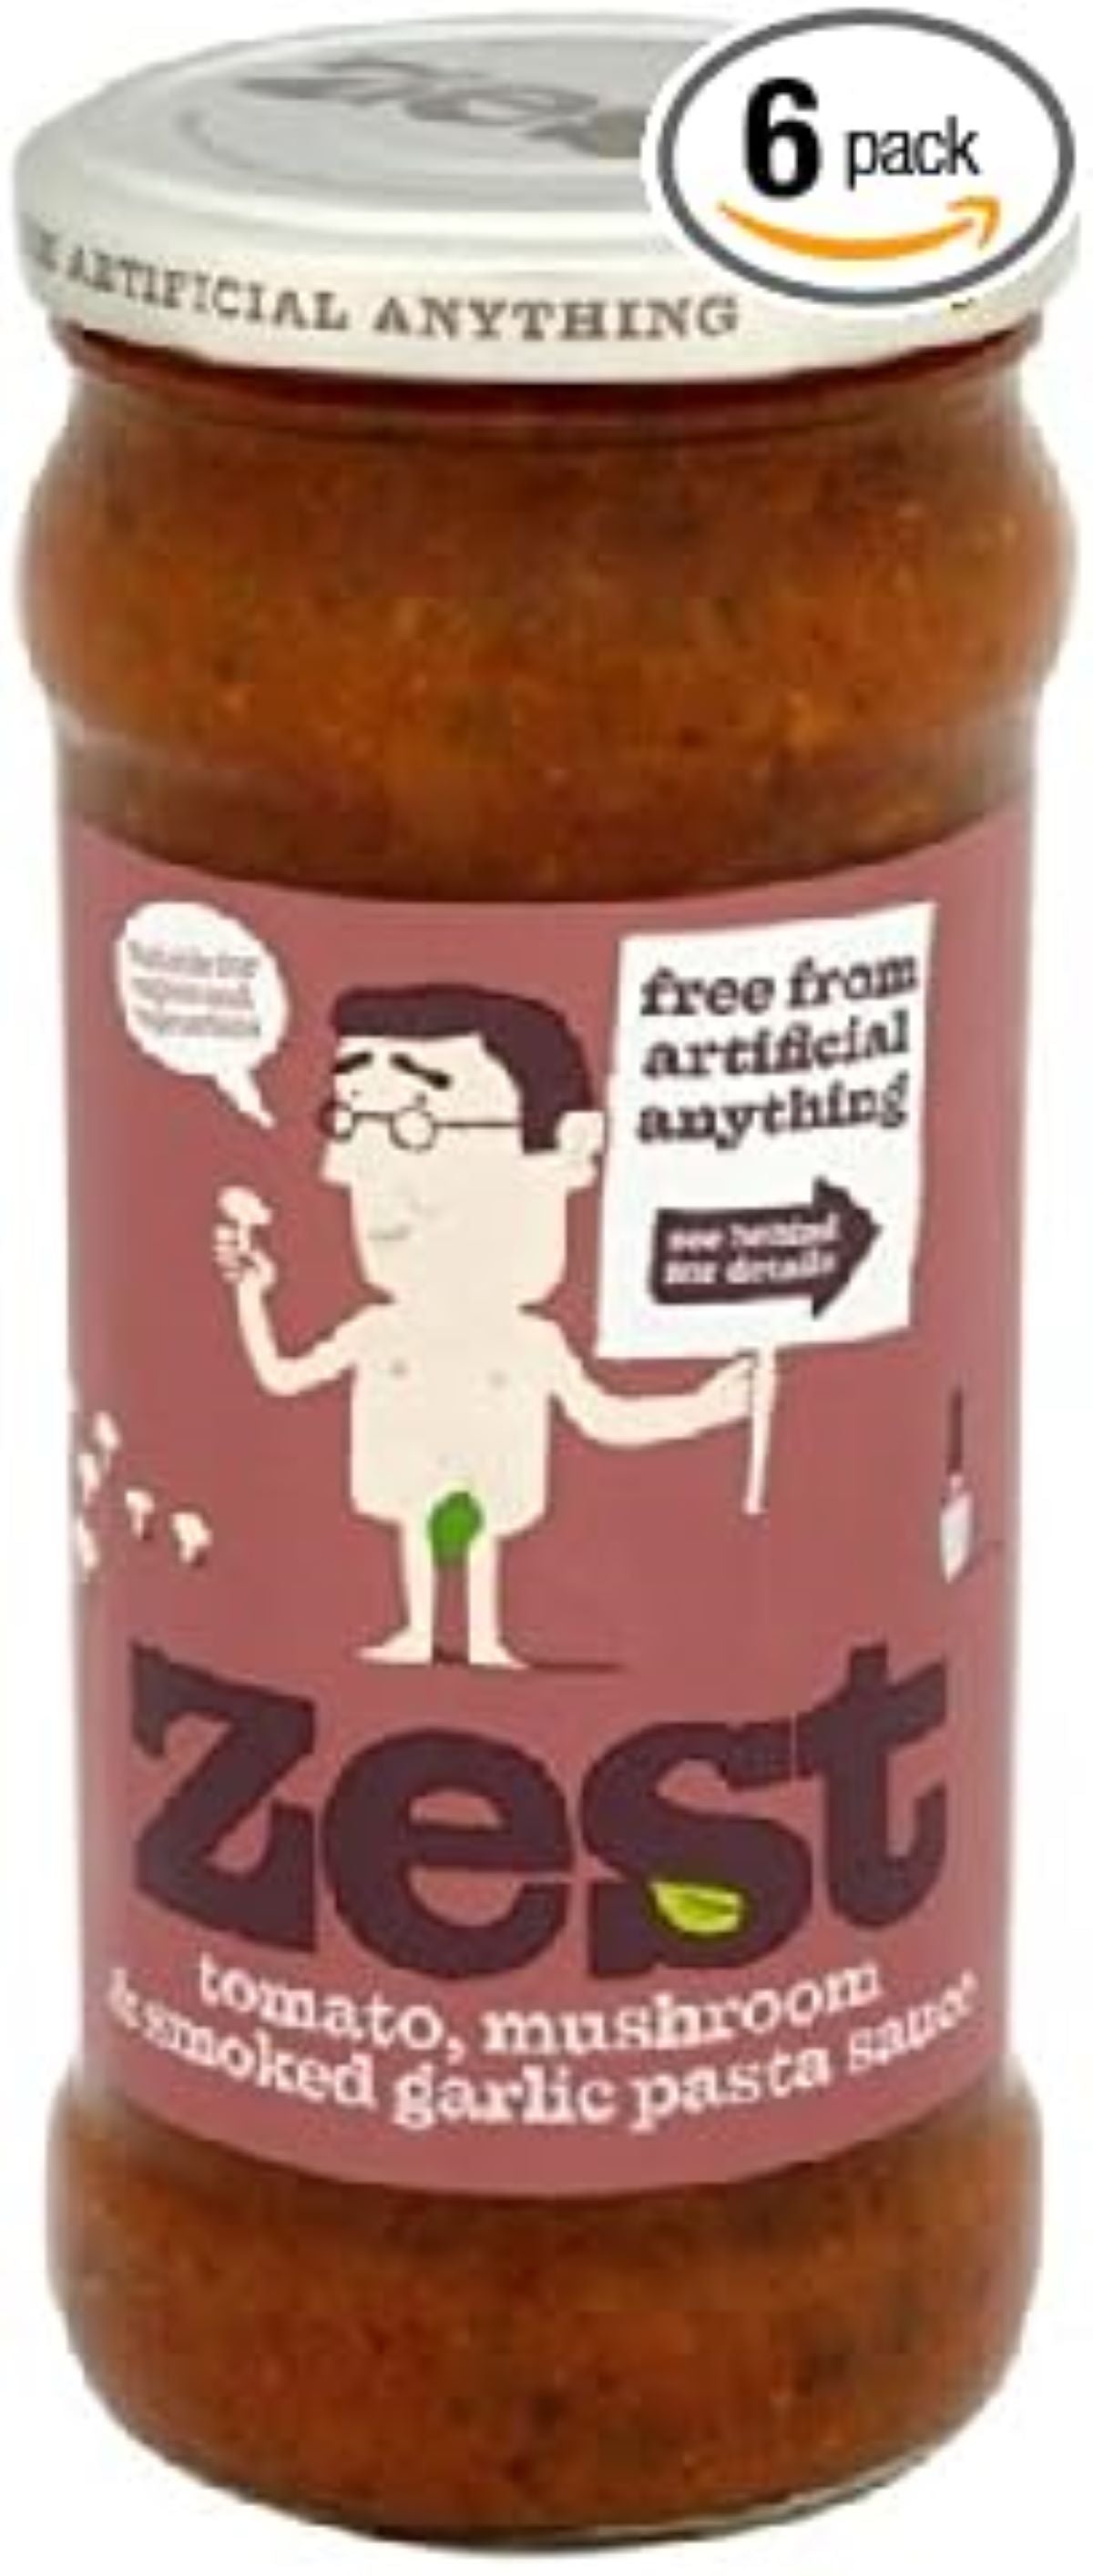 Zest Foods Tomato Mushroom & Smoked Garlic Pasta Sauce 350g